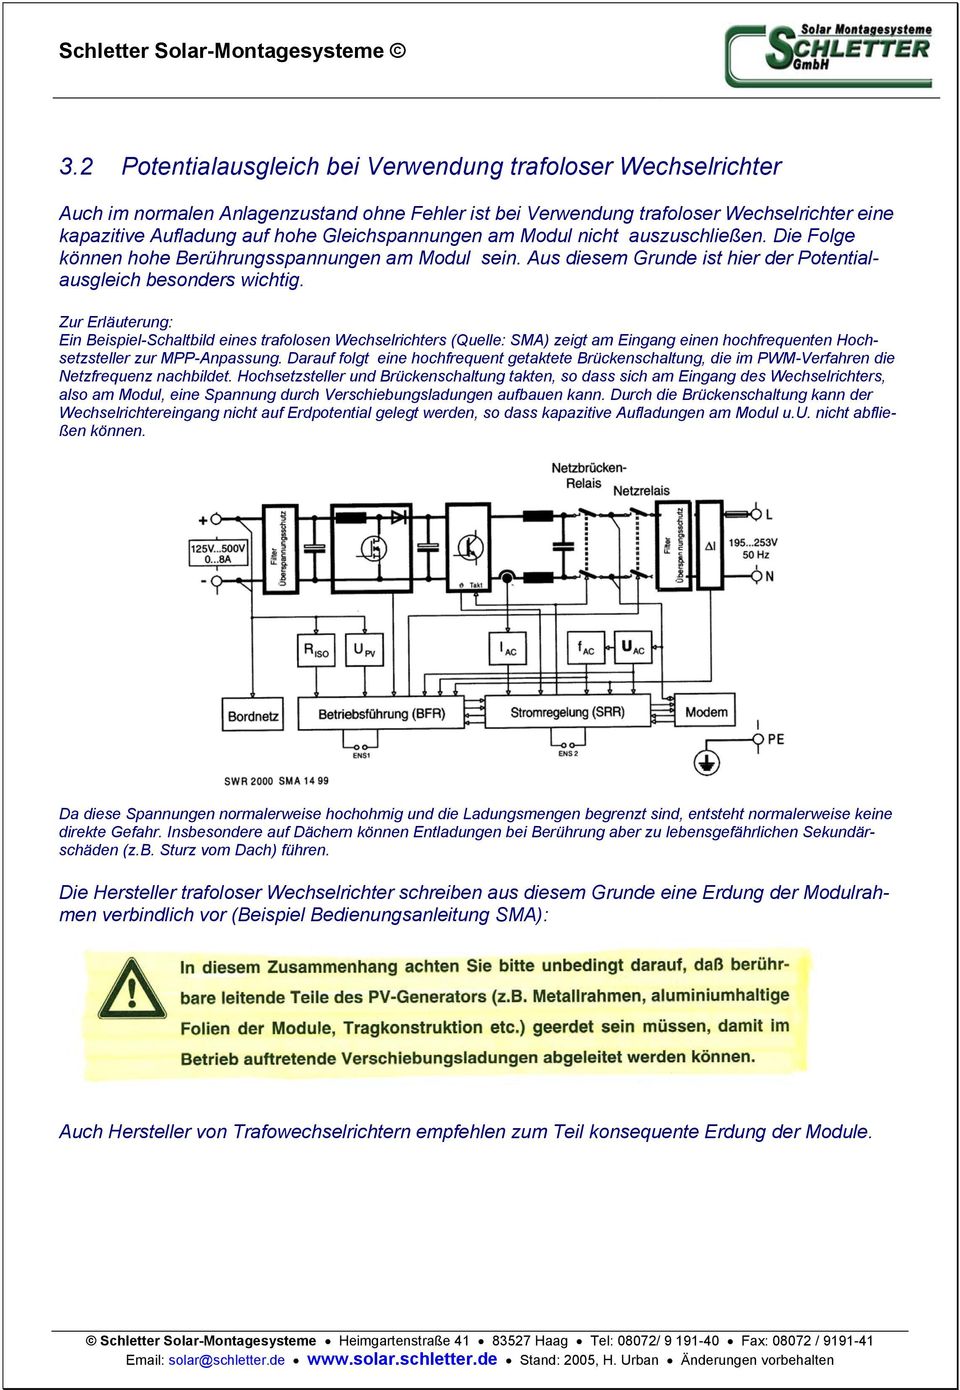 Zur Erläuterung: Ein Beispiel-Schaltbild eines trafolosen Wechselrichters (Quelle: SMA) zeigt am Eingang einen hochfrequenten Hochsetzsteller zur MPP-Anpassung.